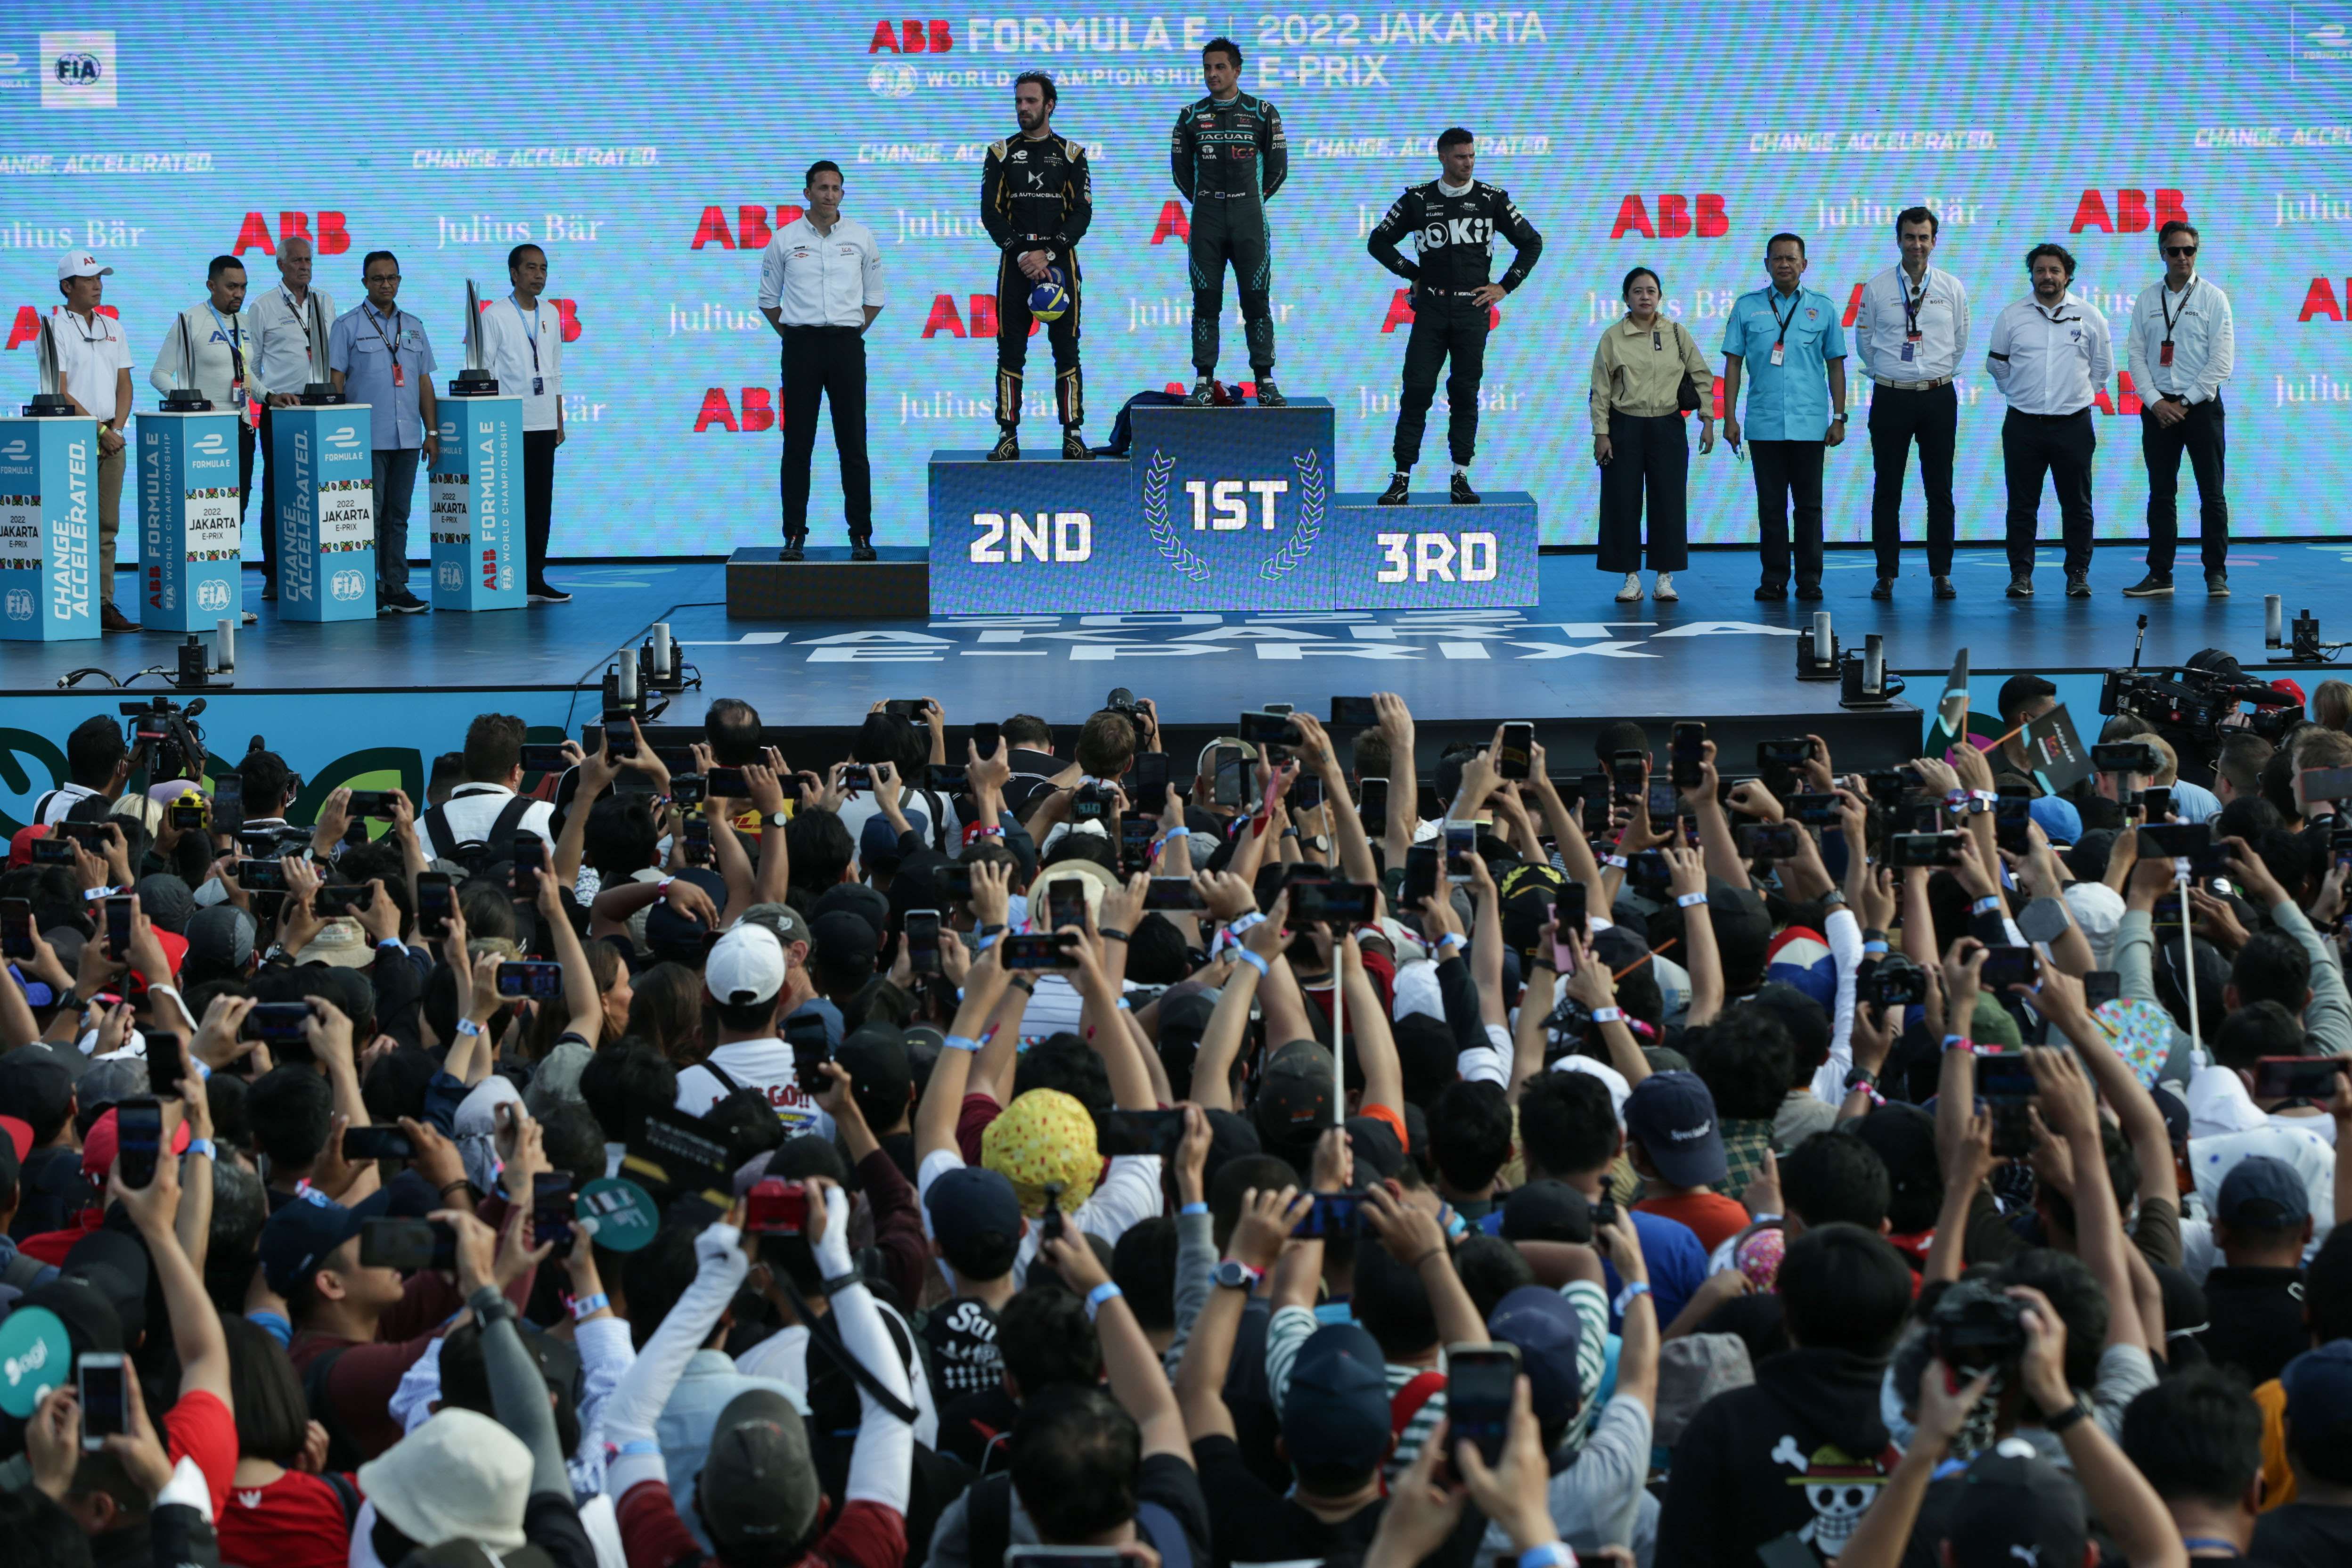 Anies: Jakarta E-Prix adalah yang Terbaik dalam 8 Tahun Sejarah Formula E